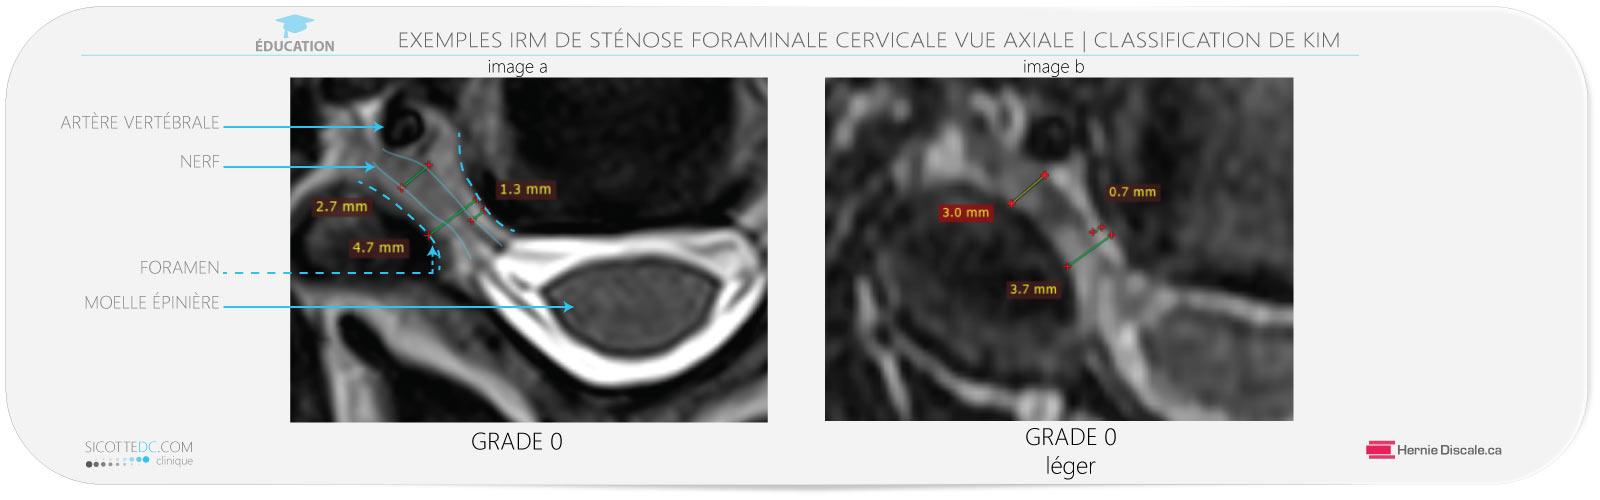 Exemple de sténose foraminale cervicale vue axiale IRM grade 0.